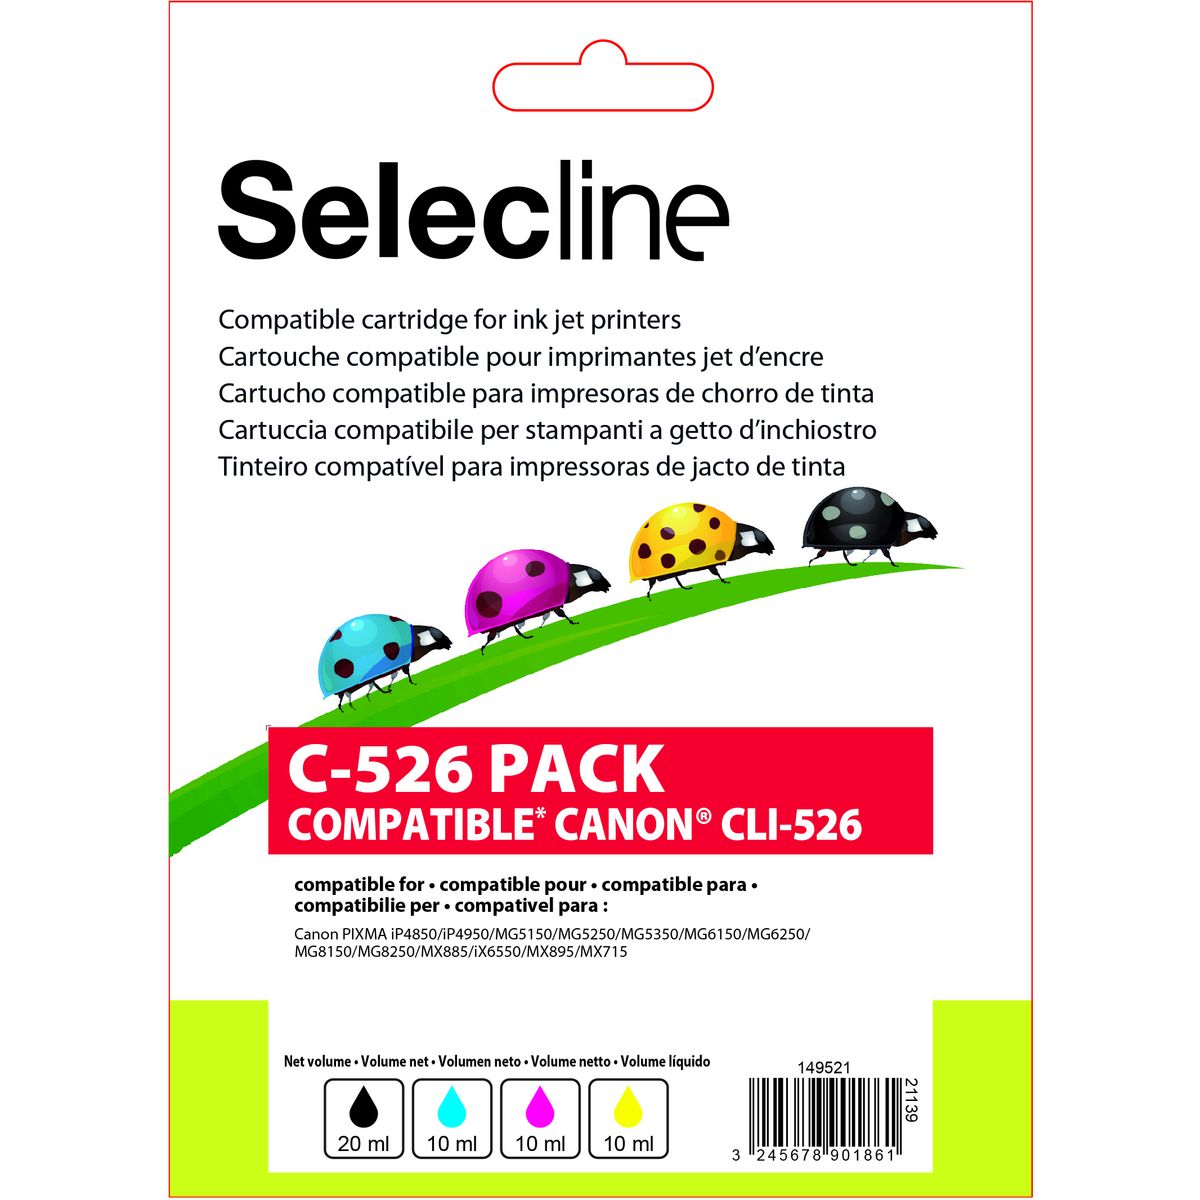 SELECLINE Cartouche 4 Couleurs C-526 PACK